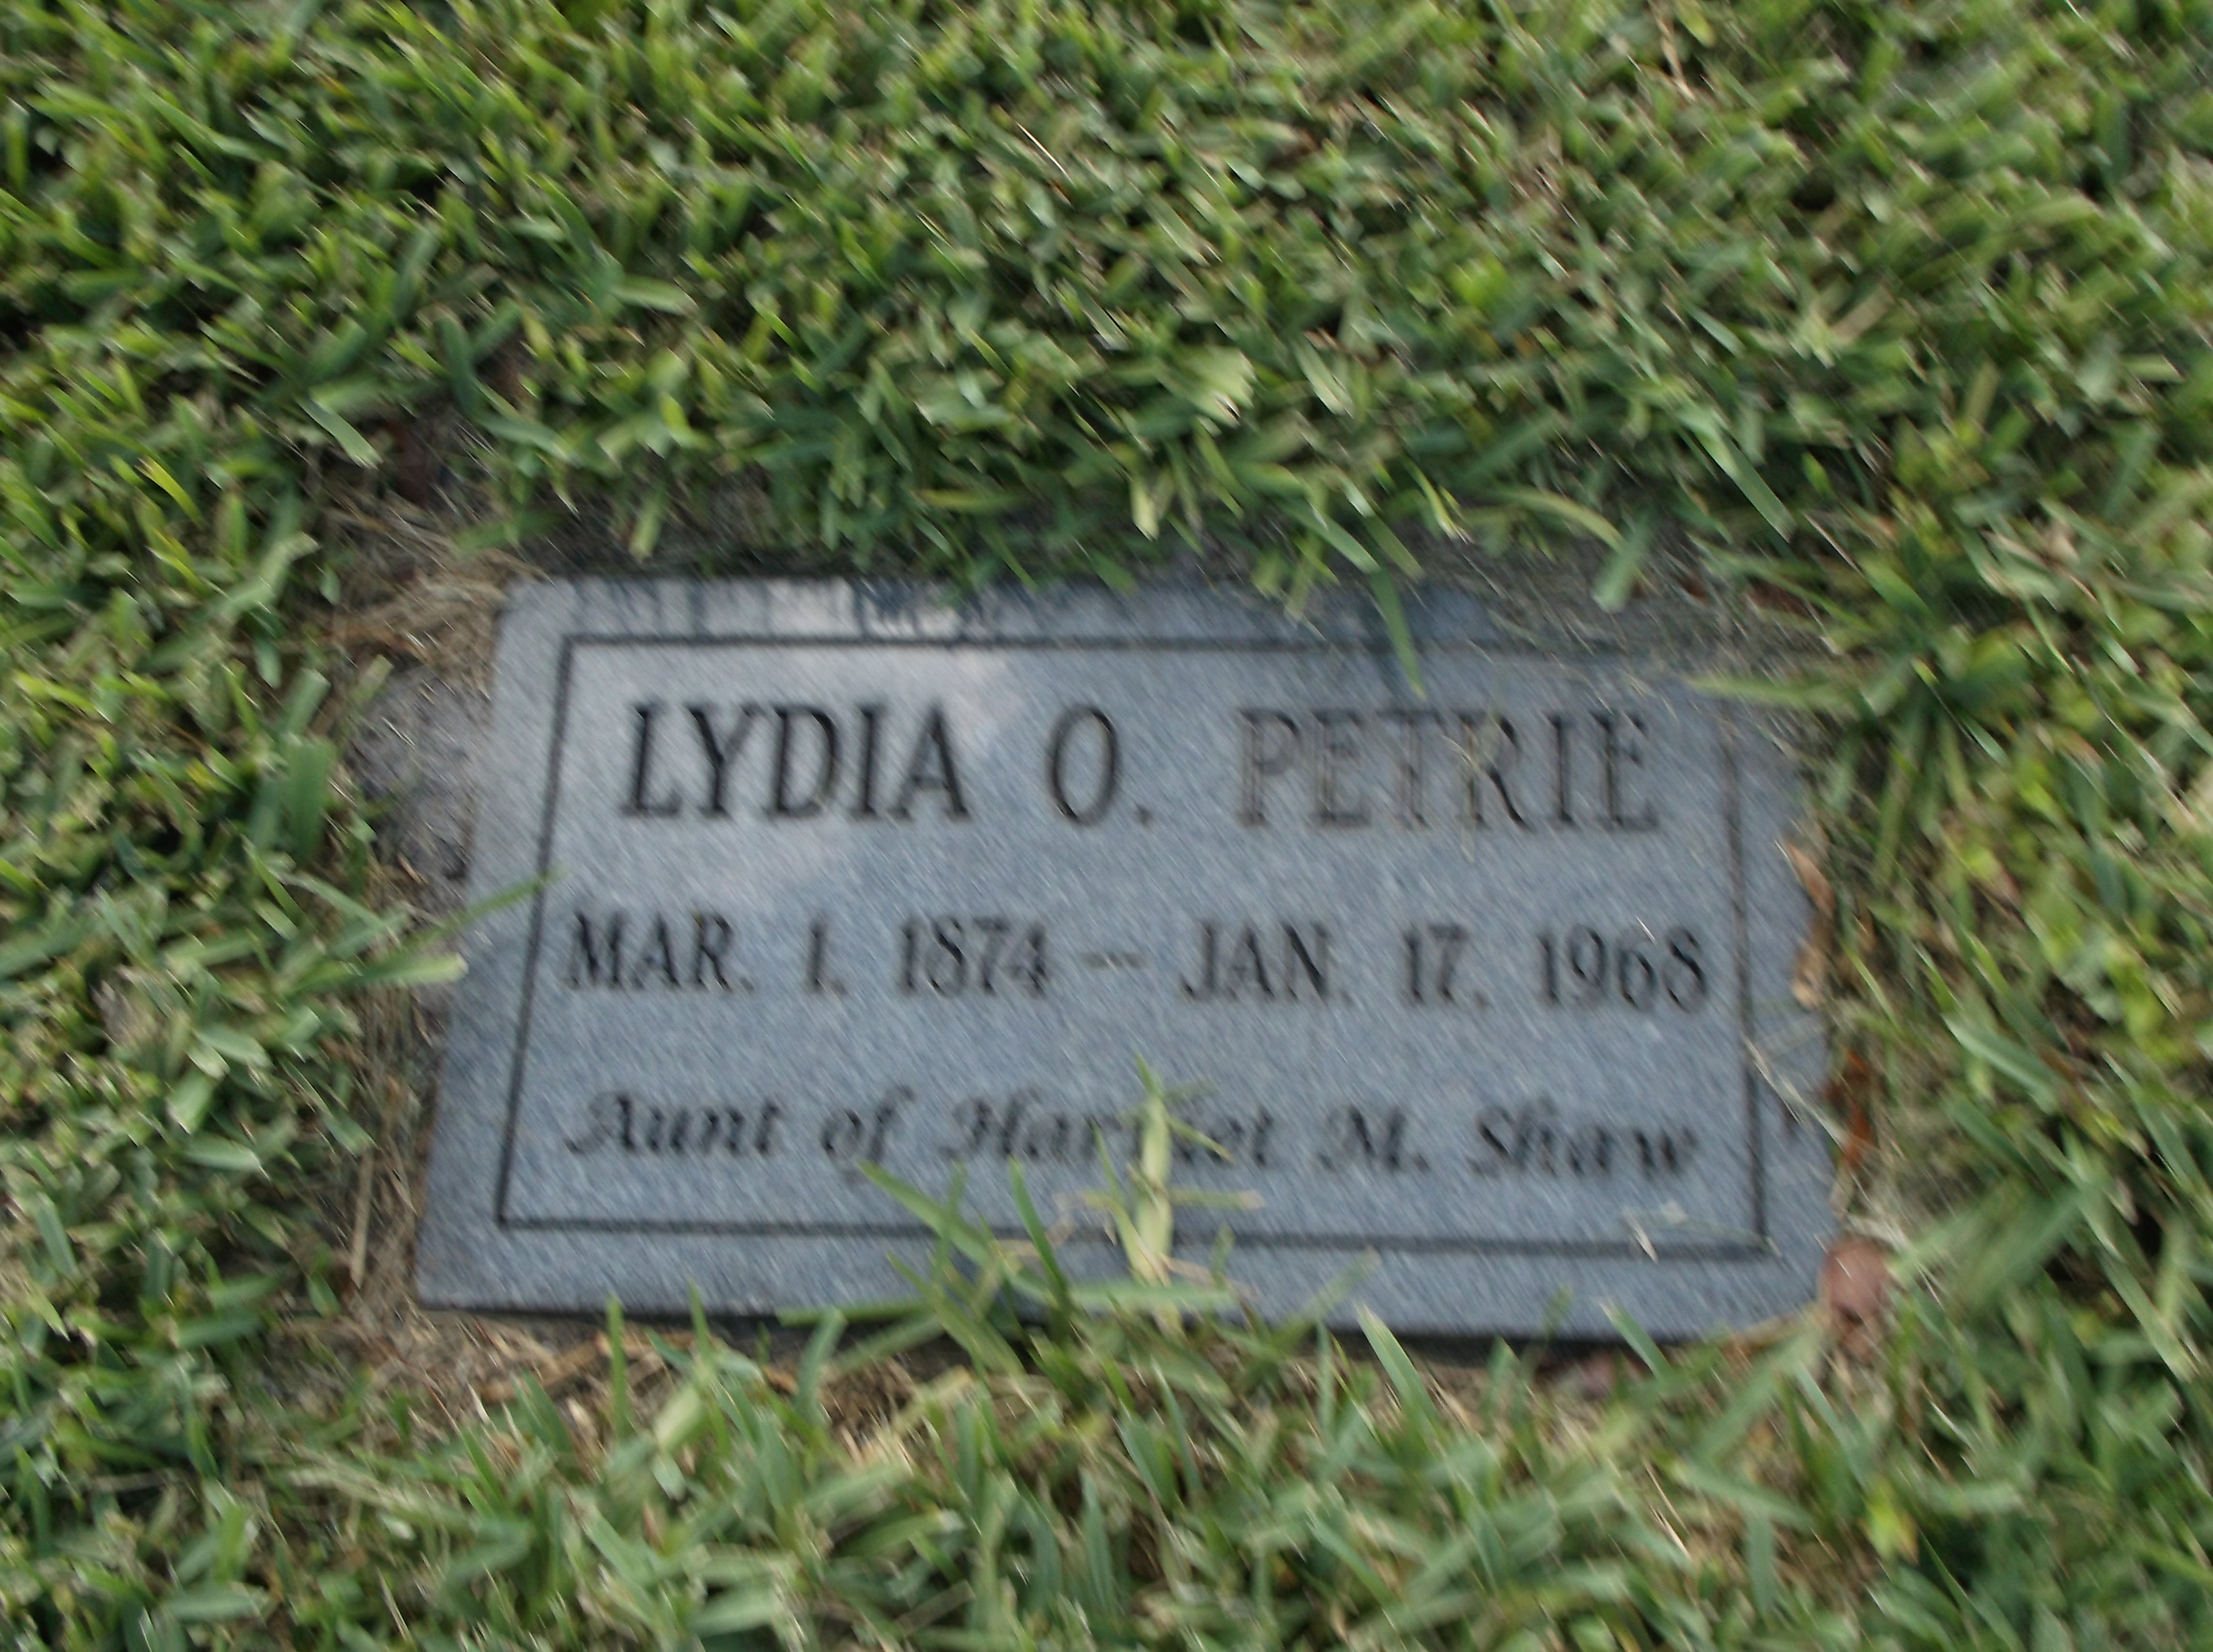 Lydia O Petrie